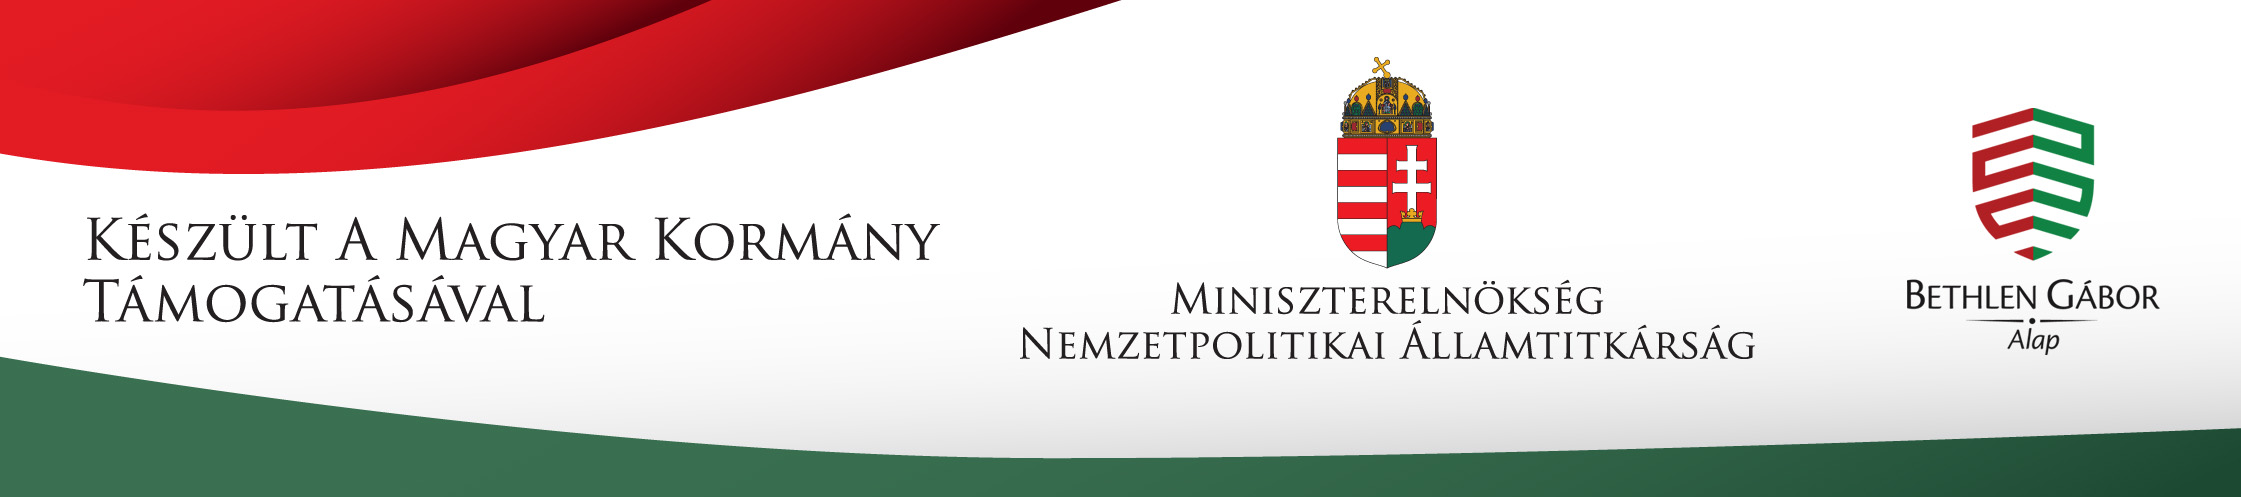 Készült Magyarország kormánya támogatásával 2018-2019-2020